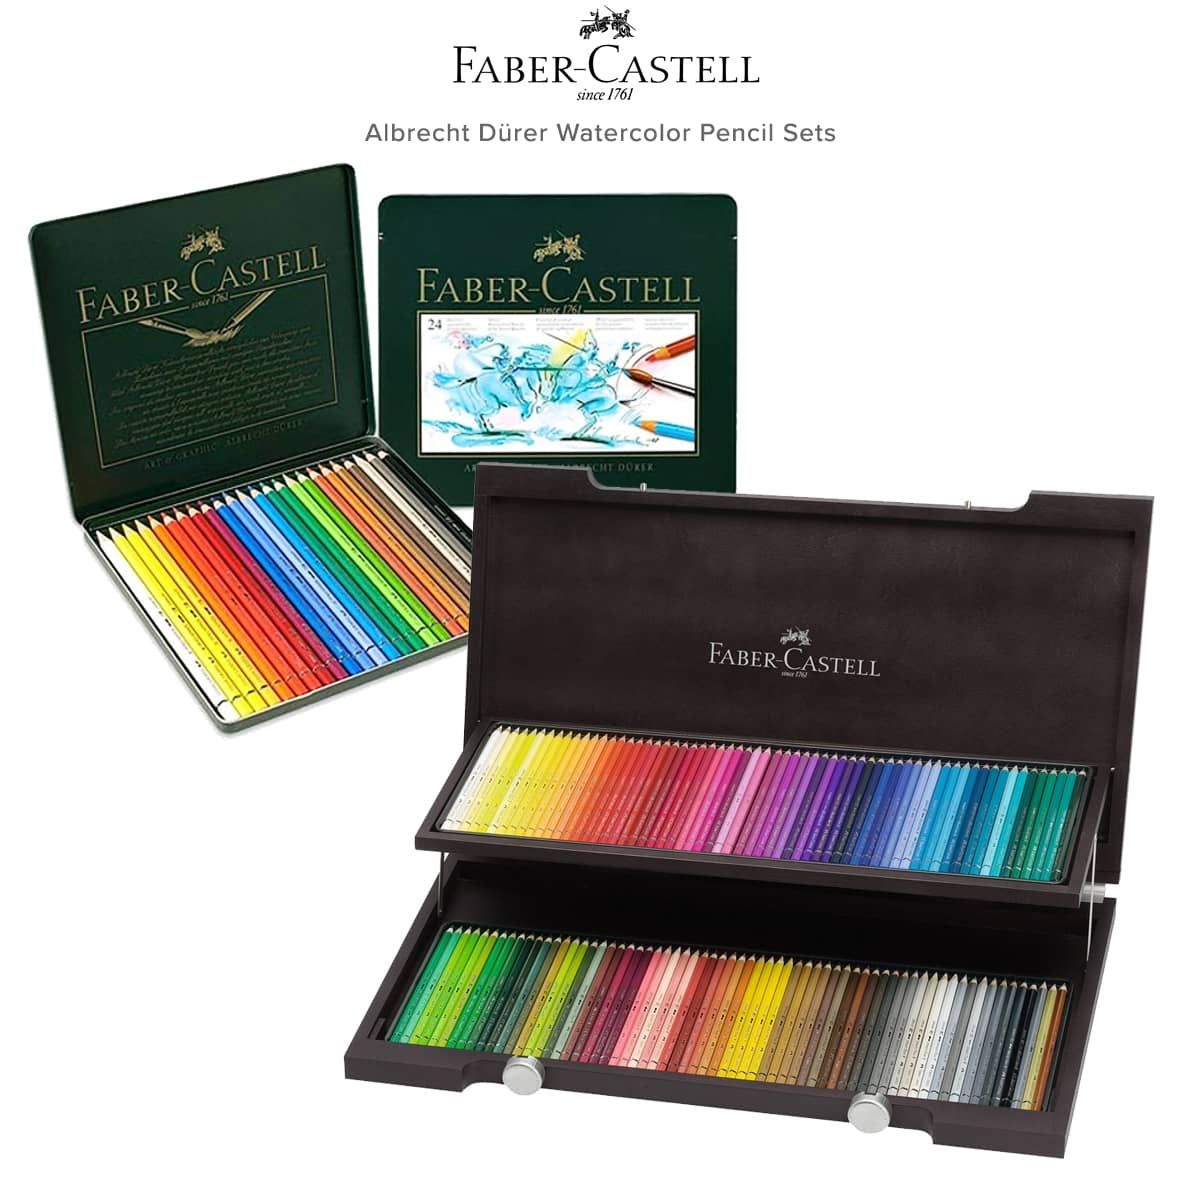 Faber-Castell Albrecht Durer Watercolor Pencil Sets | Jerry's Artarama